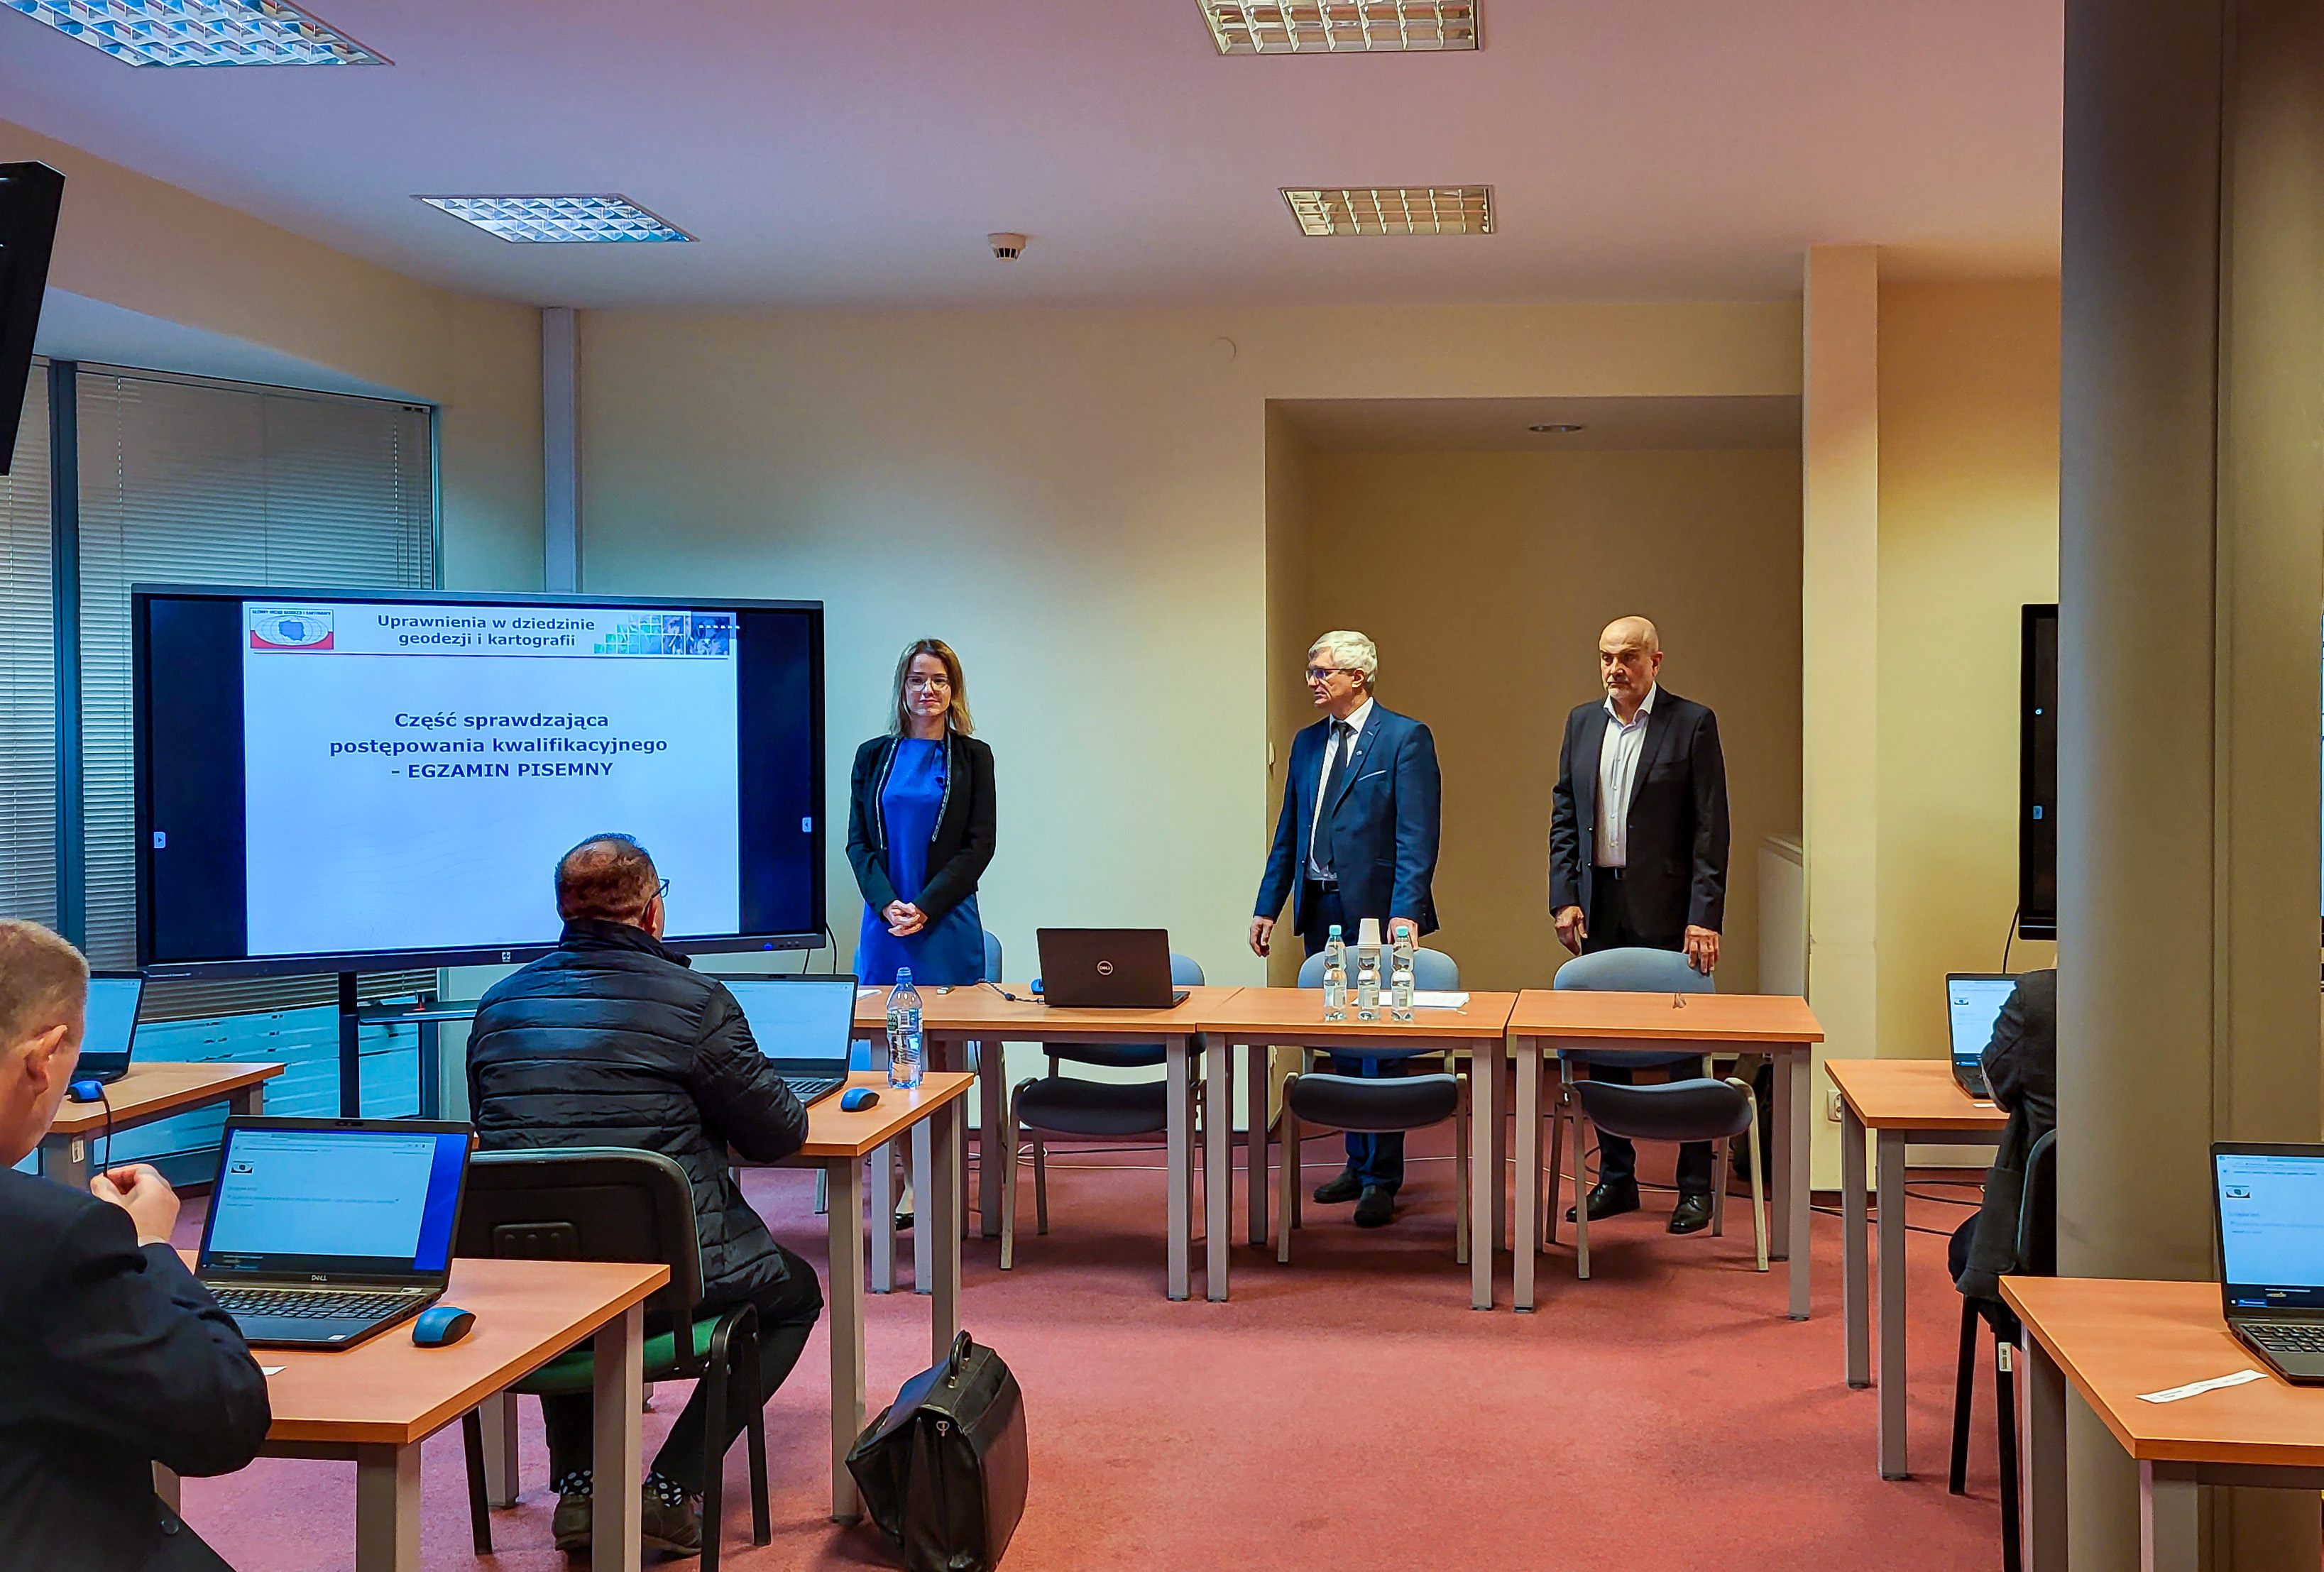 Zdjęcie przedstawia salę egzaminacyjną z członkami Komisji egzaminacyjnej i osobami przystępującymi do egzaminu siedzącymi pojedynczo przed laptopami.